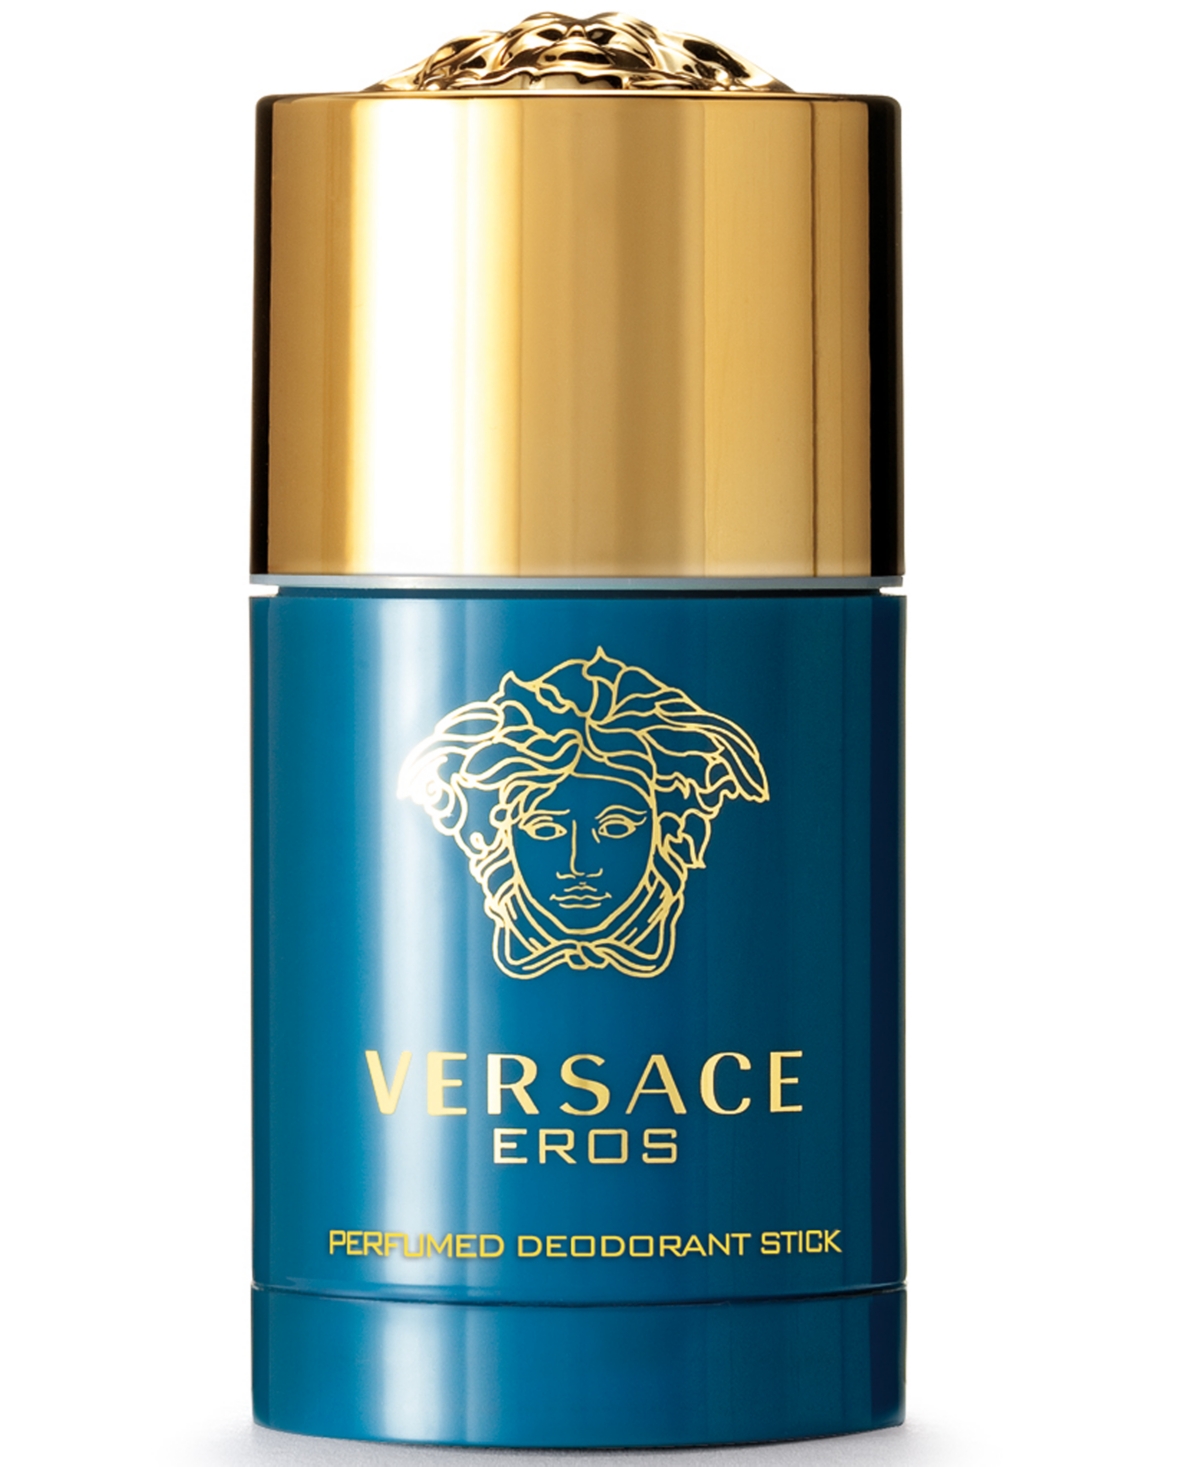 Versace Men's Eros Deodorant Stick, 2.6 oz.